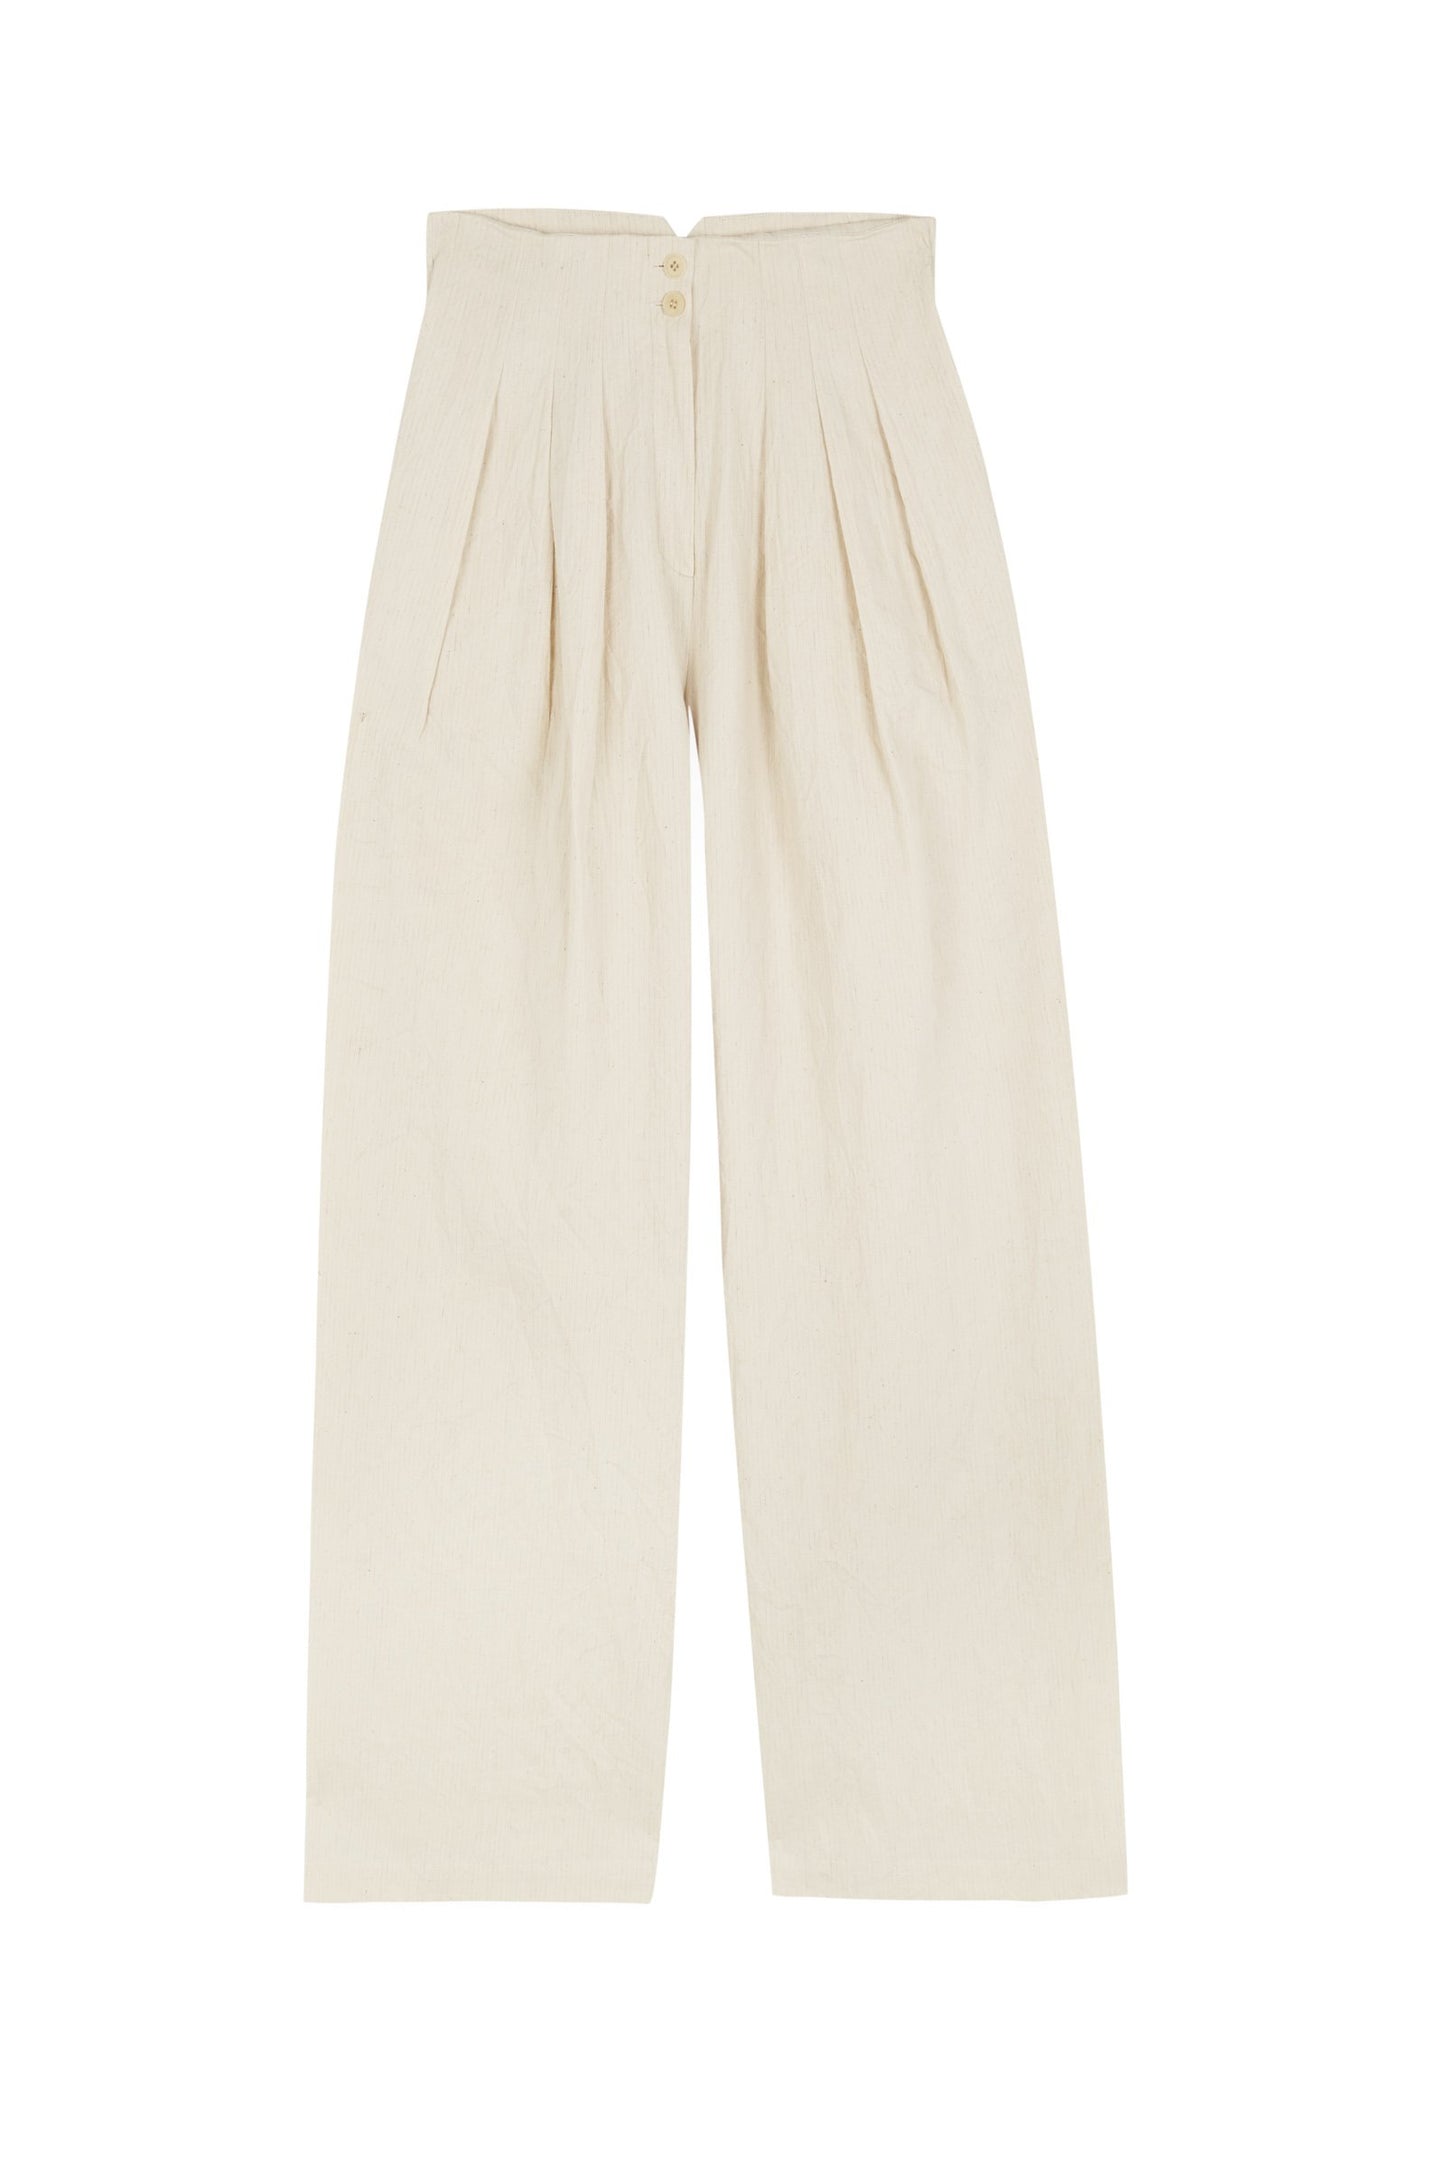 Gilda, pantalón ancho en algodón, papel y lino